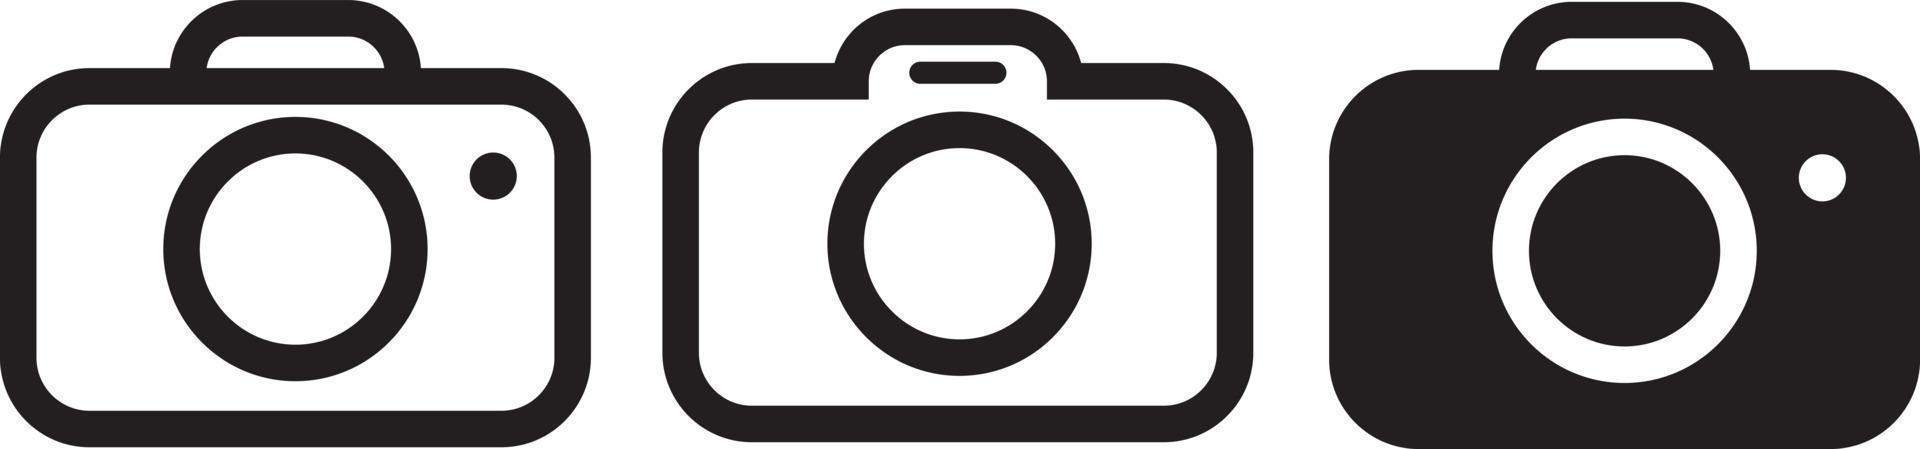 conjunto de ícones simples de câmera fotográfica vetor